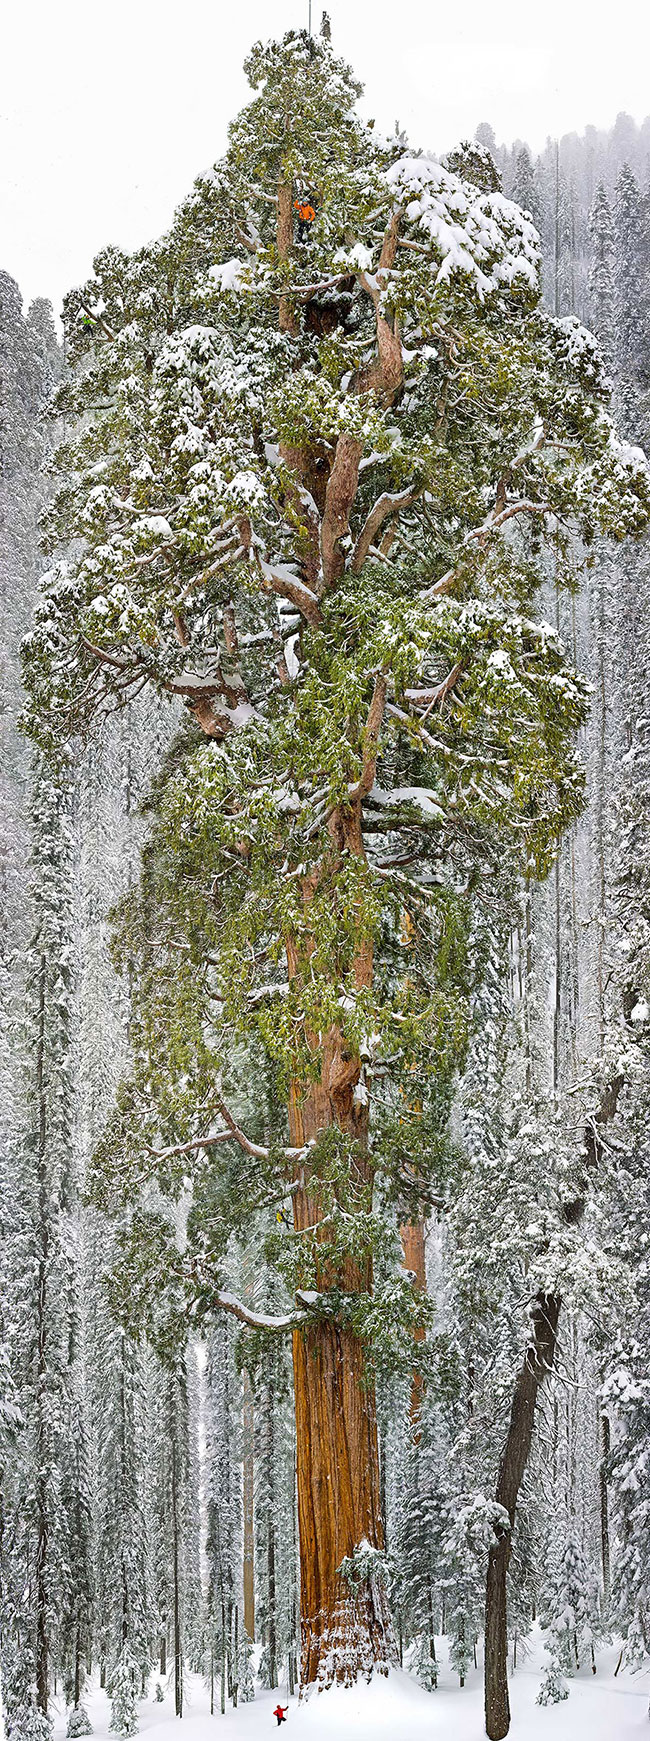 Cây Sequoia với chiều cao 73 mét với đường kính rộng nhất 28 mét, đây là chiếc cây Sequoia lớn thứ 3 trên thế giới.
